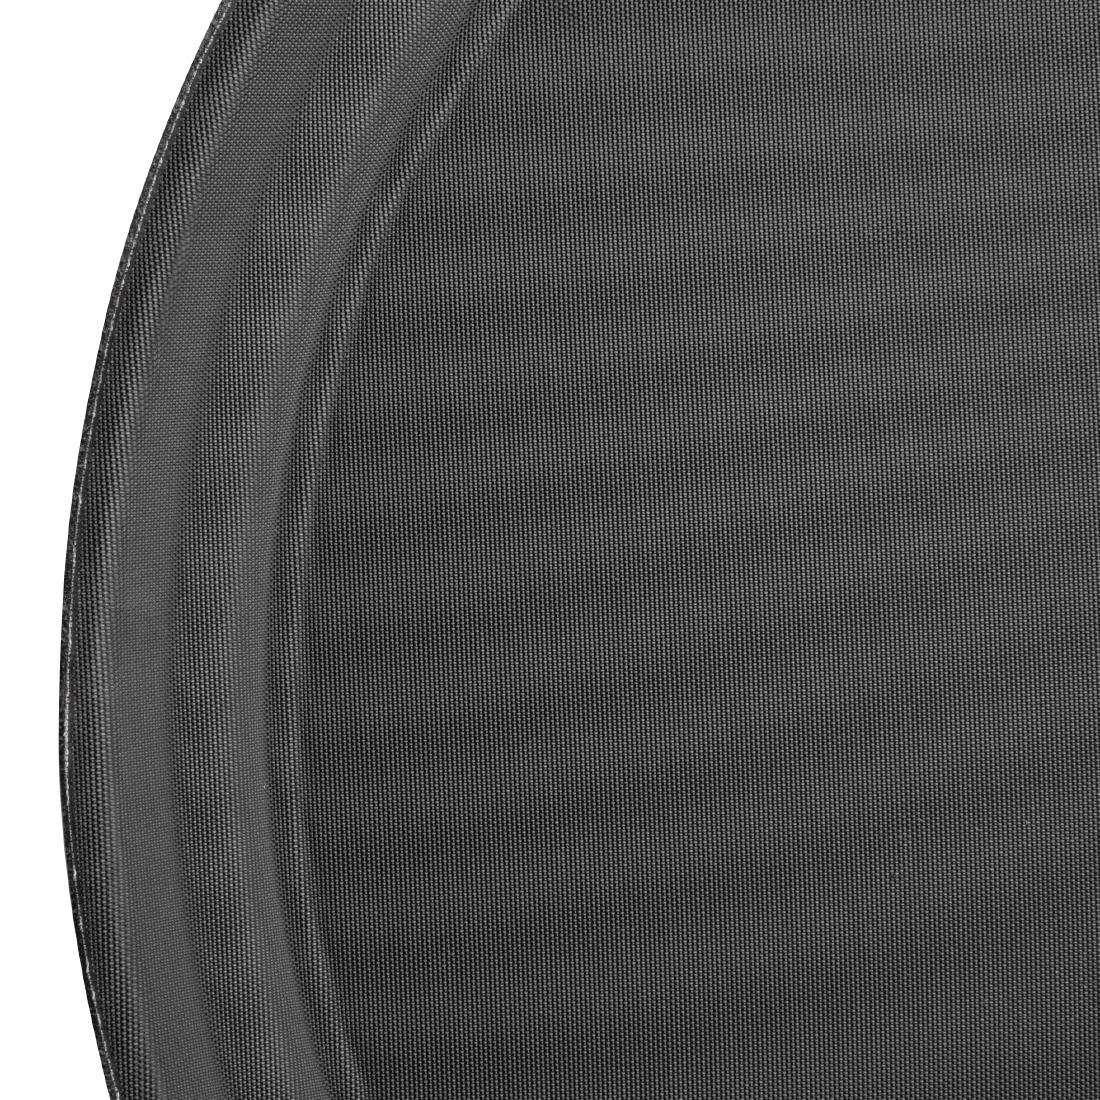 Olympia Kristallon Polypropylene Round Non-Slip Tray Black 280mm - C556  - 3